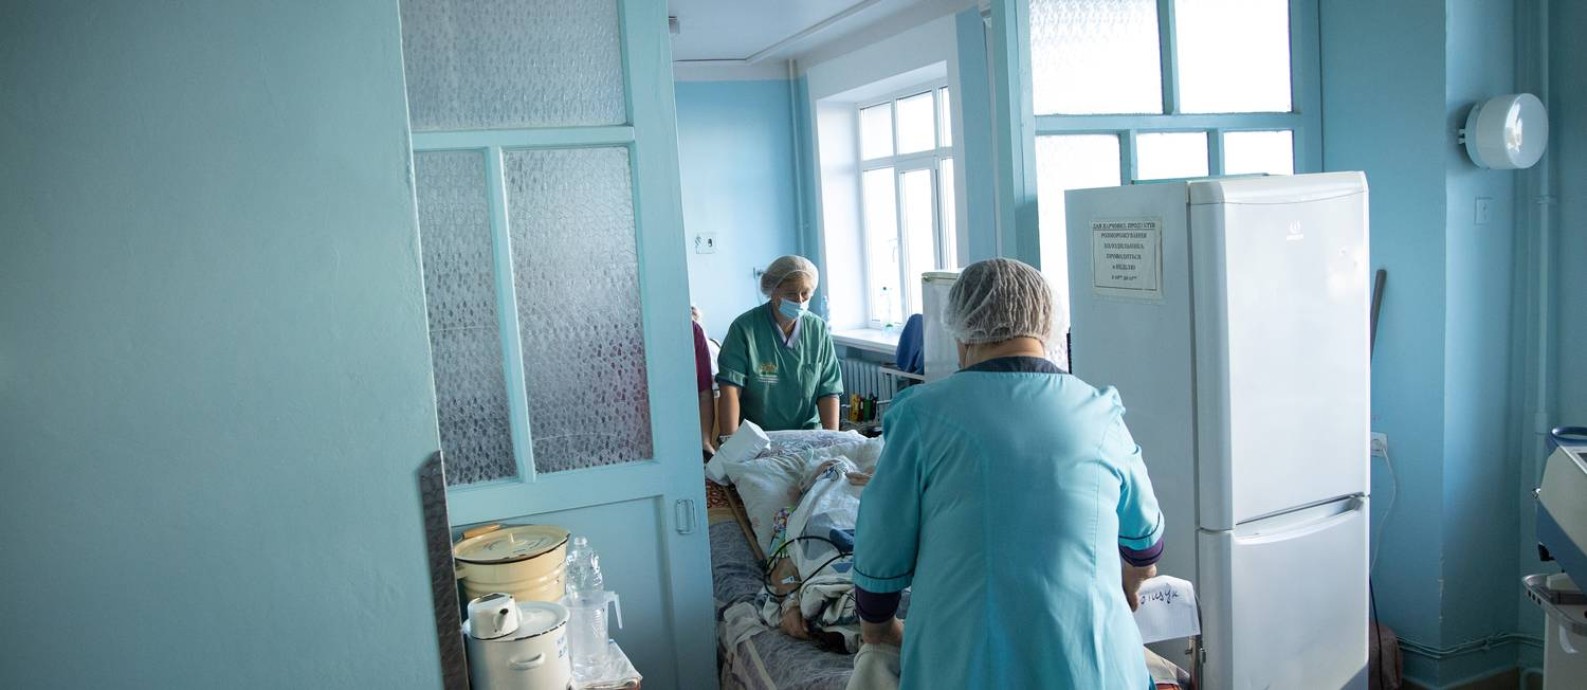 Médicos transportam paciente de Covid-19 em hospital de Kiev, na Ucrânia Foto: STANISLAV KOZLIUK / REUTERS